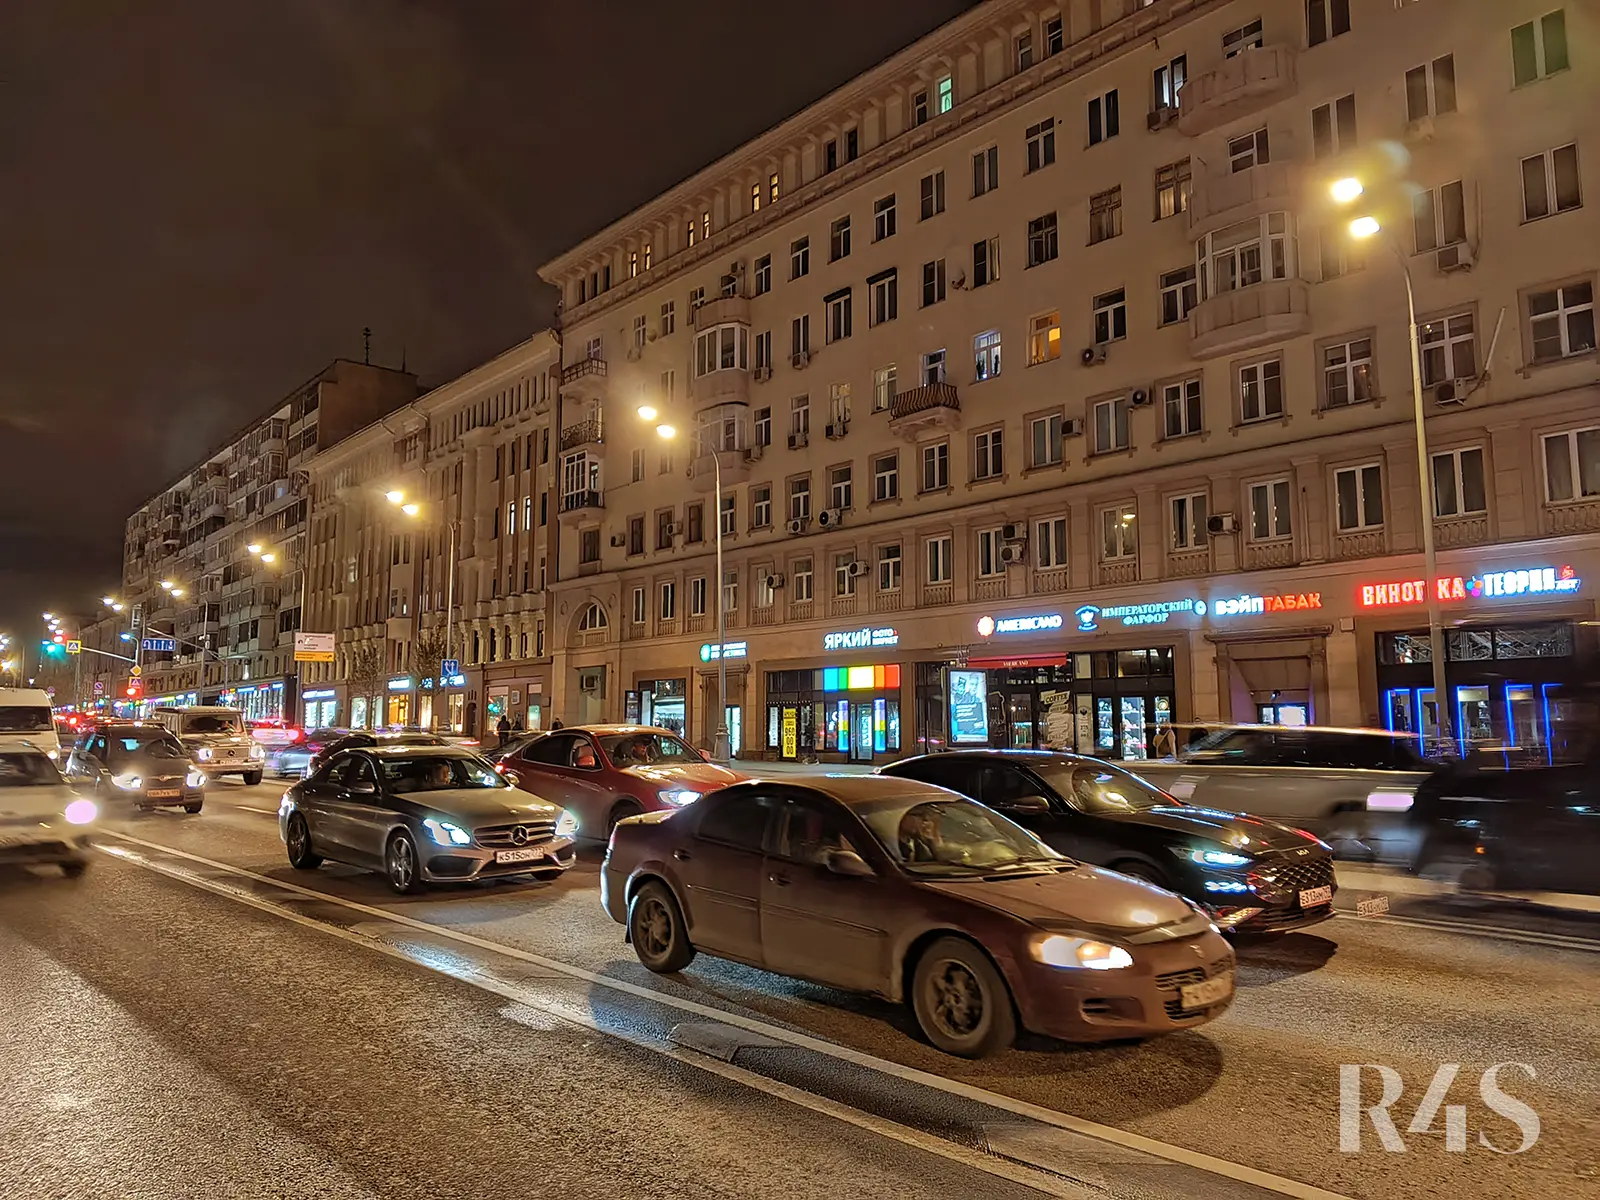 Продажа готового арендного бизнеса площадью 189.5 м2 в Москве: Красная Пресня, 32-34 R4S | Realty4Sale